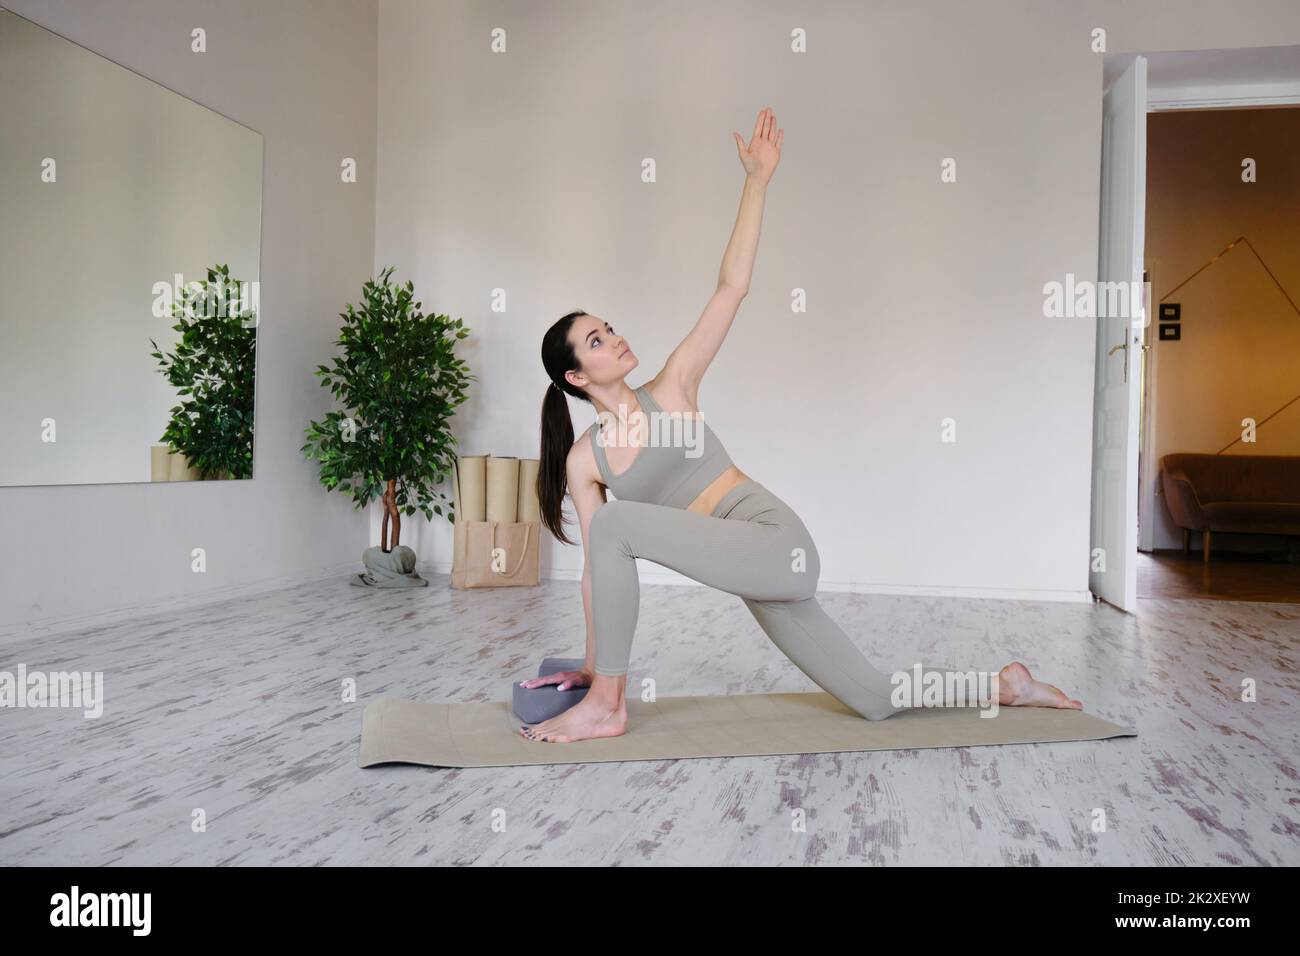 Jeune femme brunette très positive faisant de l'exercice Utthita parsvakonasana, du yoga et des pilates Banque D'Images